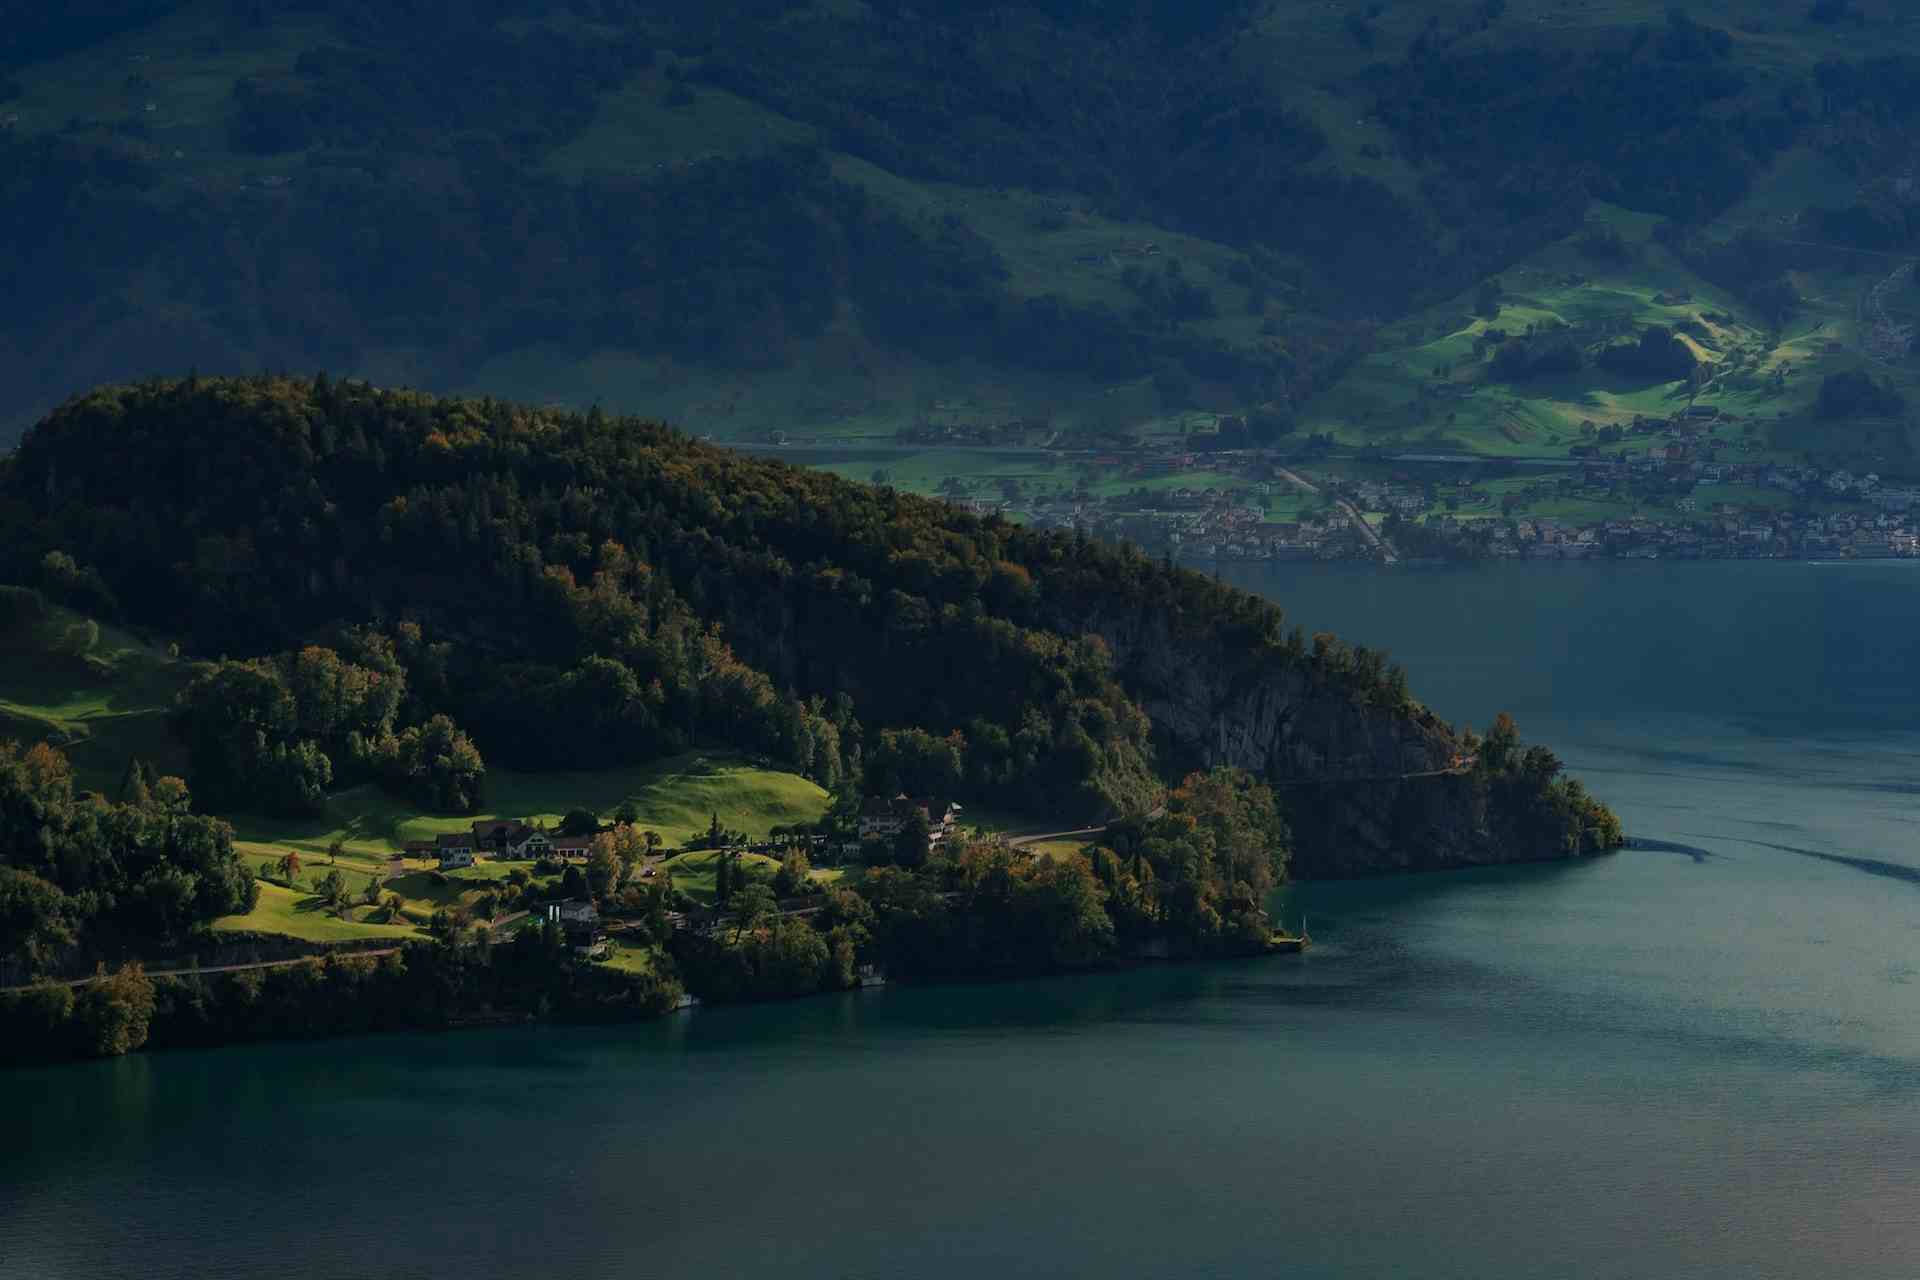 Reinbio, producteur à Grossdietwil canton de Lucerne en Suisse